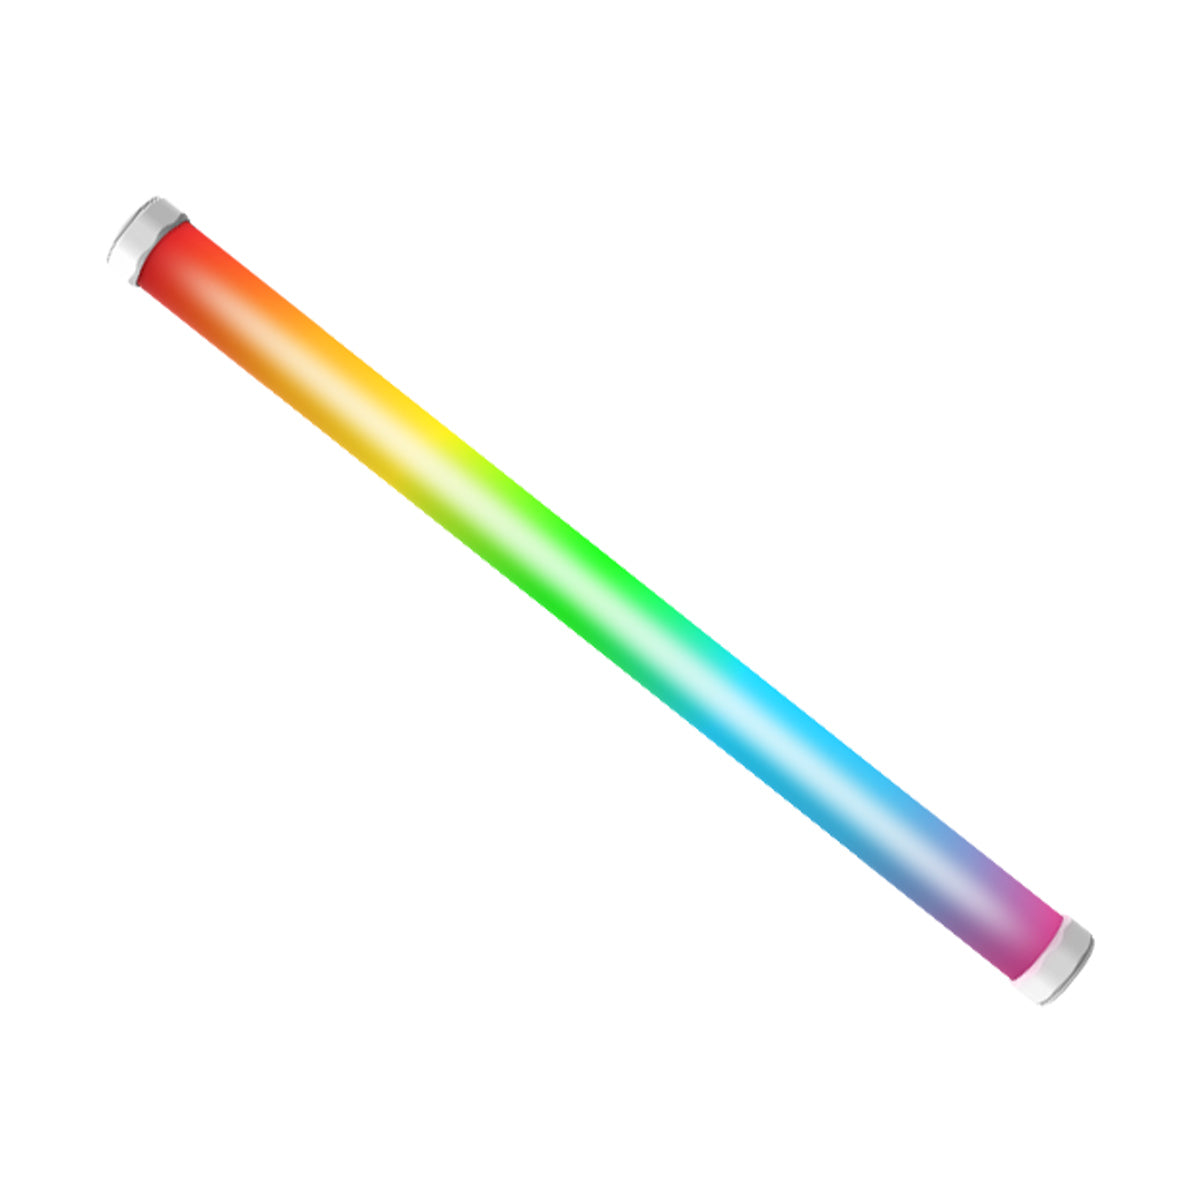 Amaran PT2c - Pixel Tube RGB LED Light (2')